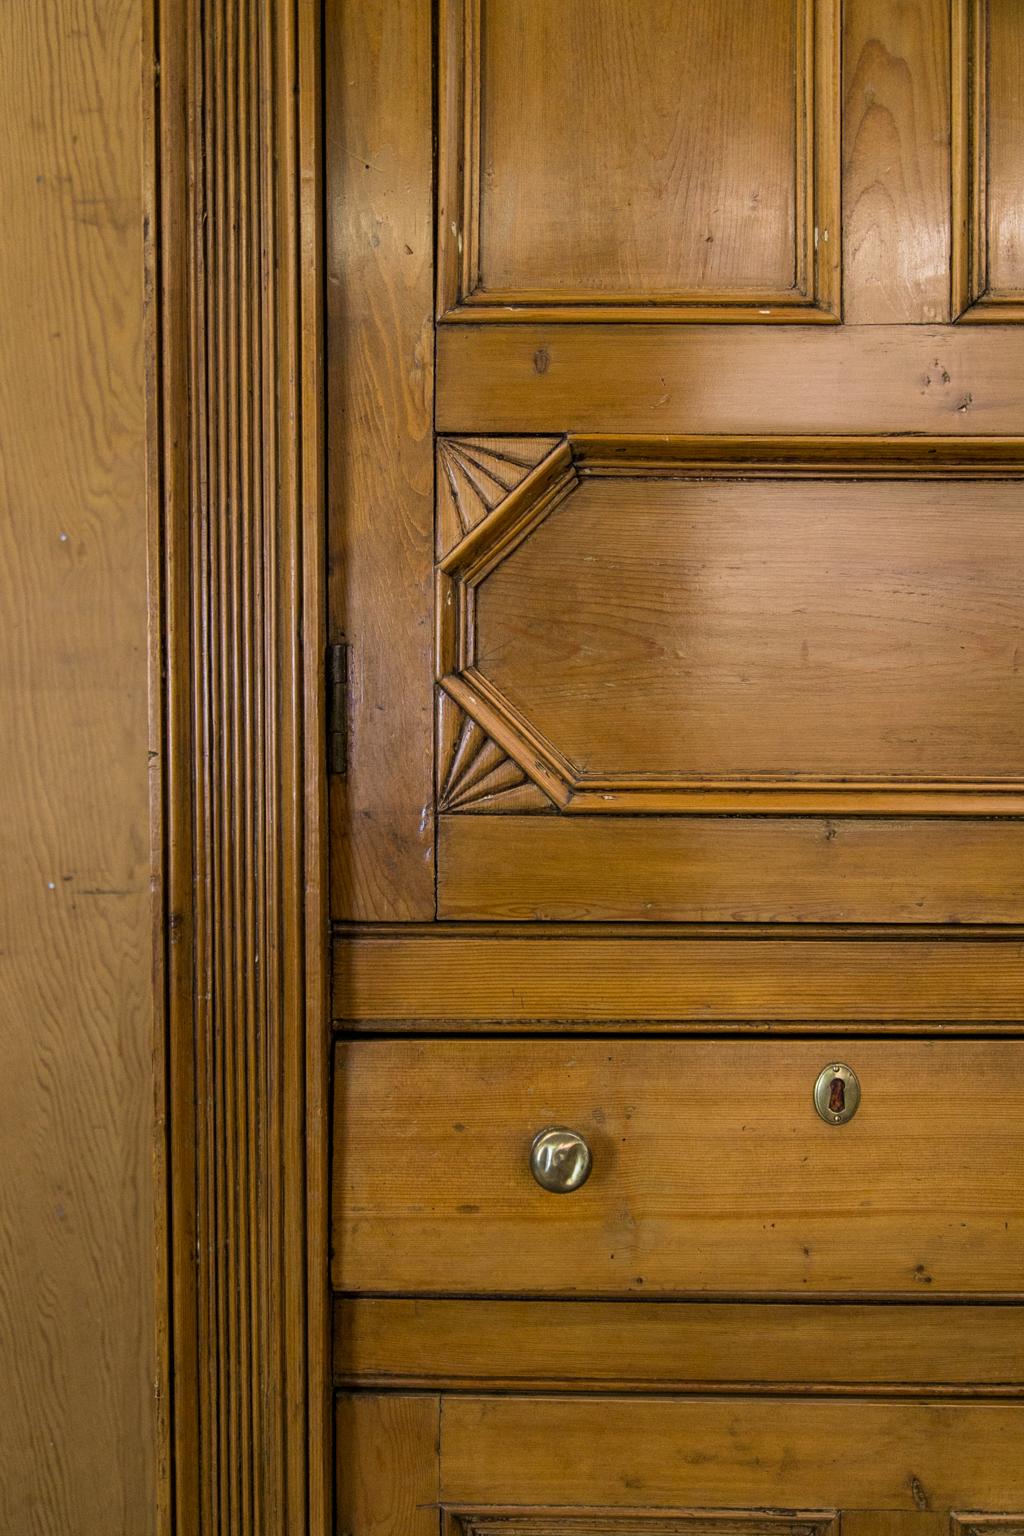 Cette armoire en pin anglais comporte deux portes supérieures avec deux panneaux en retrait encadrés de moulures sculptées et des panneaux inférieurs encadrés de quarts d'éventail stylisés sculptés. La corniche présente une frise sculptée et